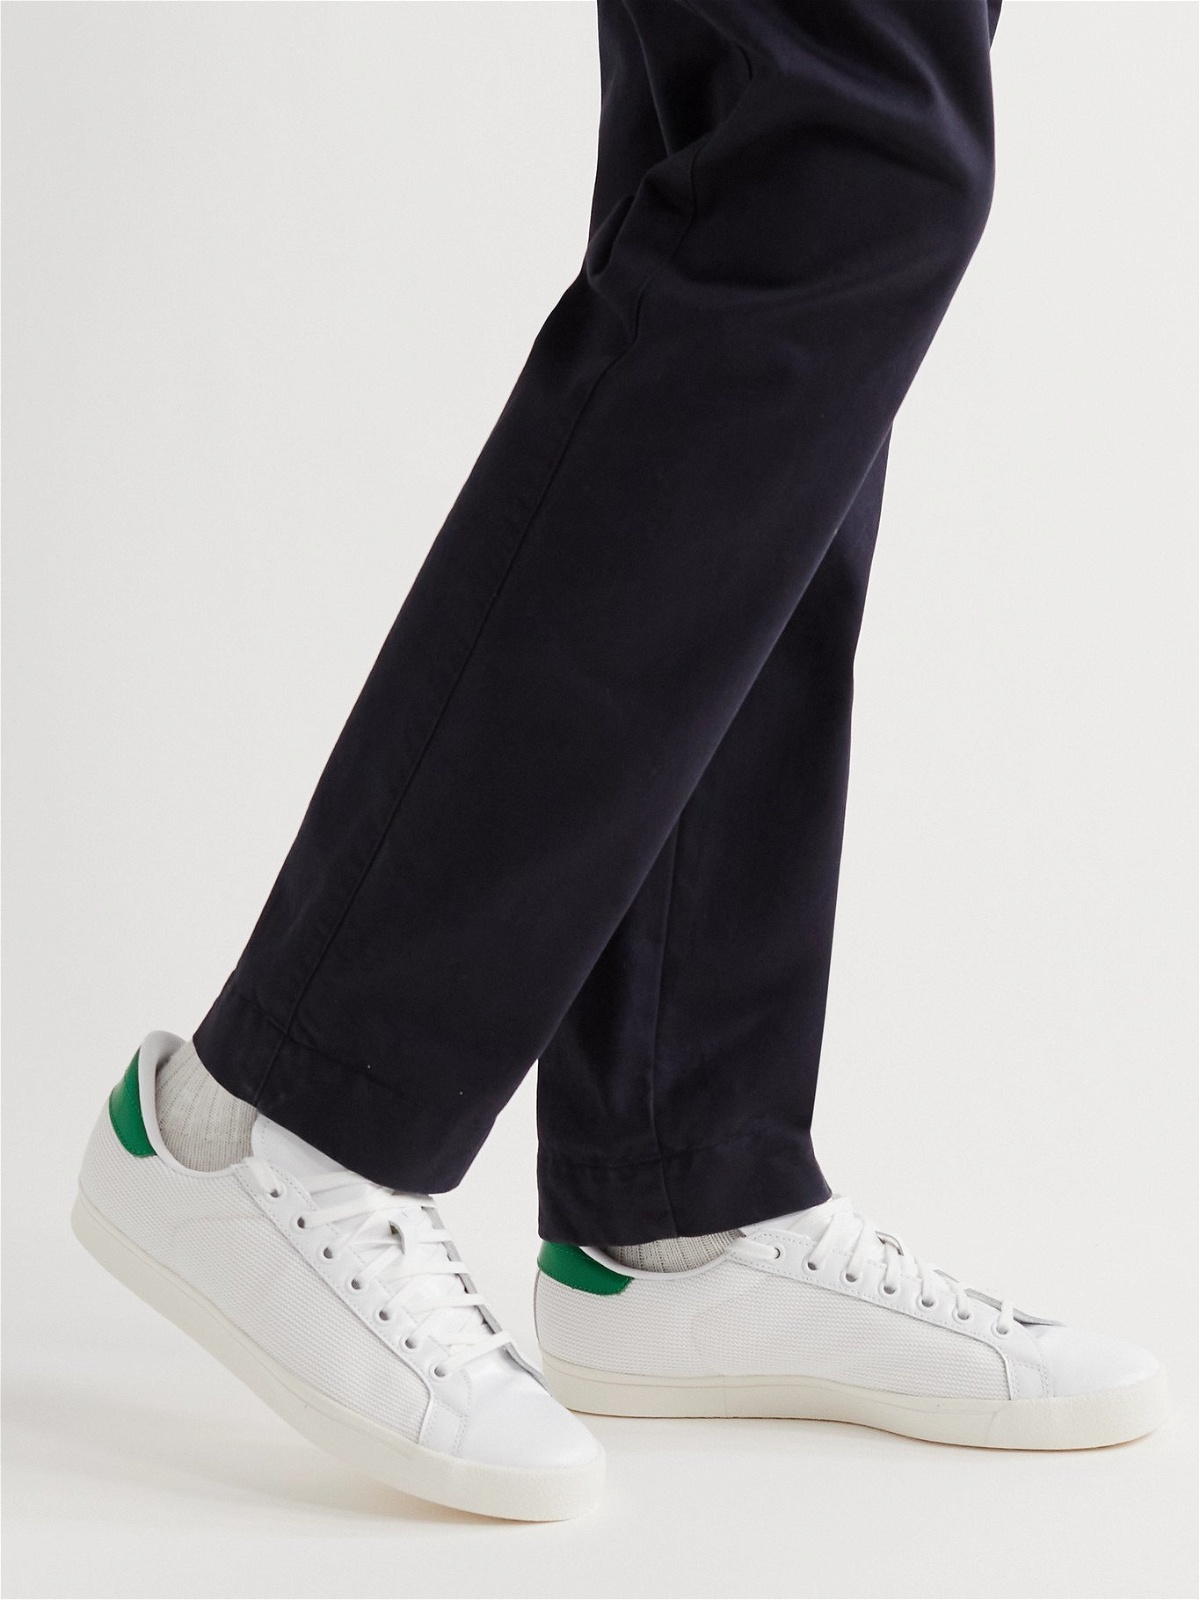 adidas Samba OG Shoes - White | Men's Lifestyle | adidas US